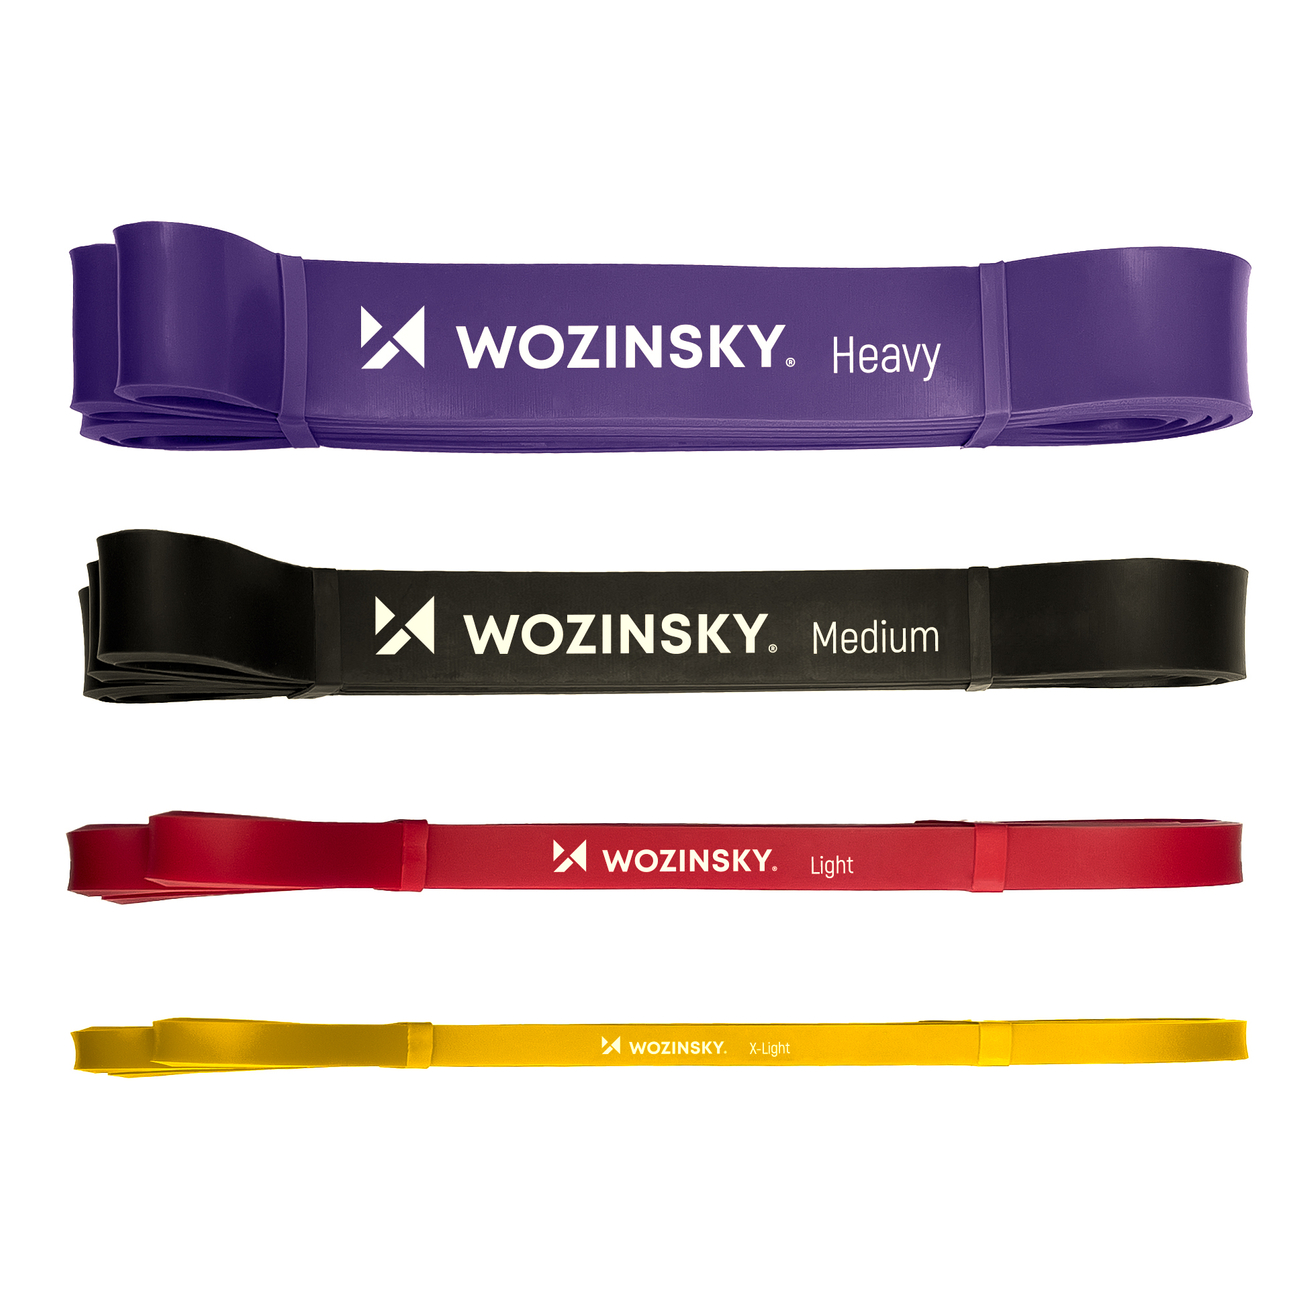 Gummi elastisch Wozinsky 5x Übungsbänder Fitness Bänder Widerstandsband 